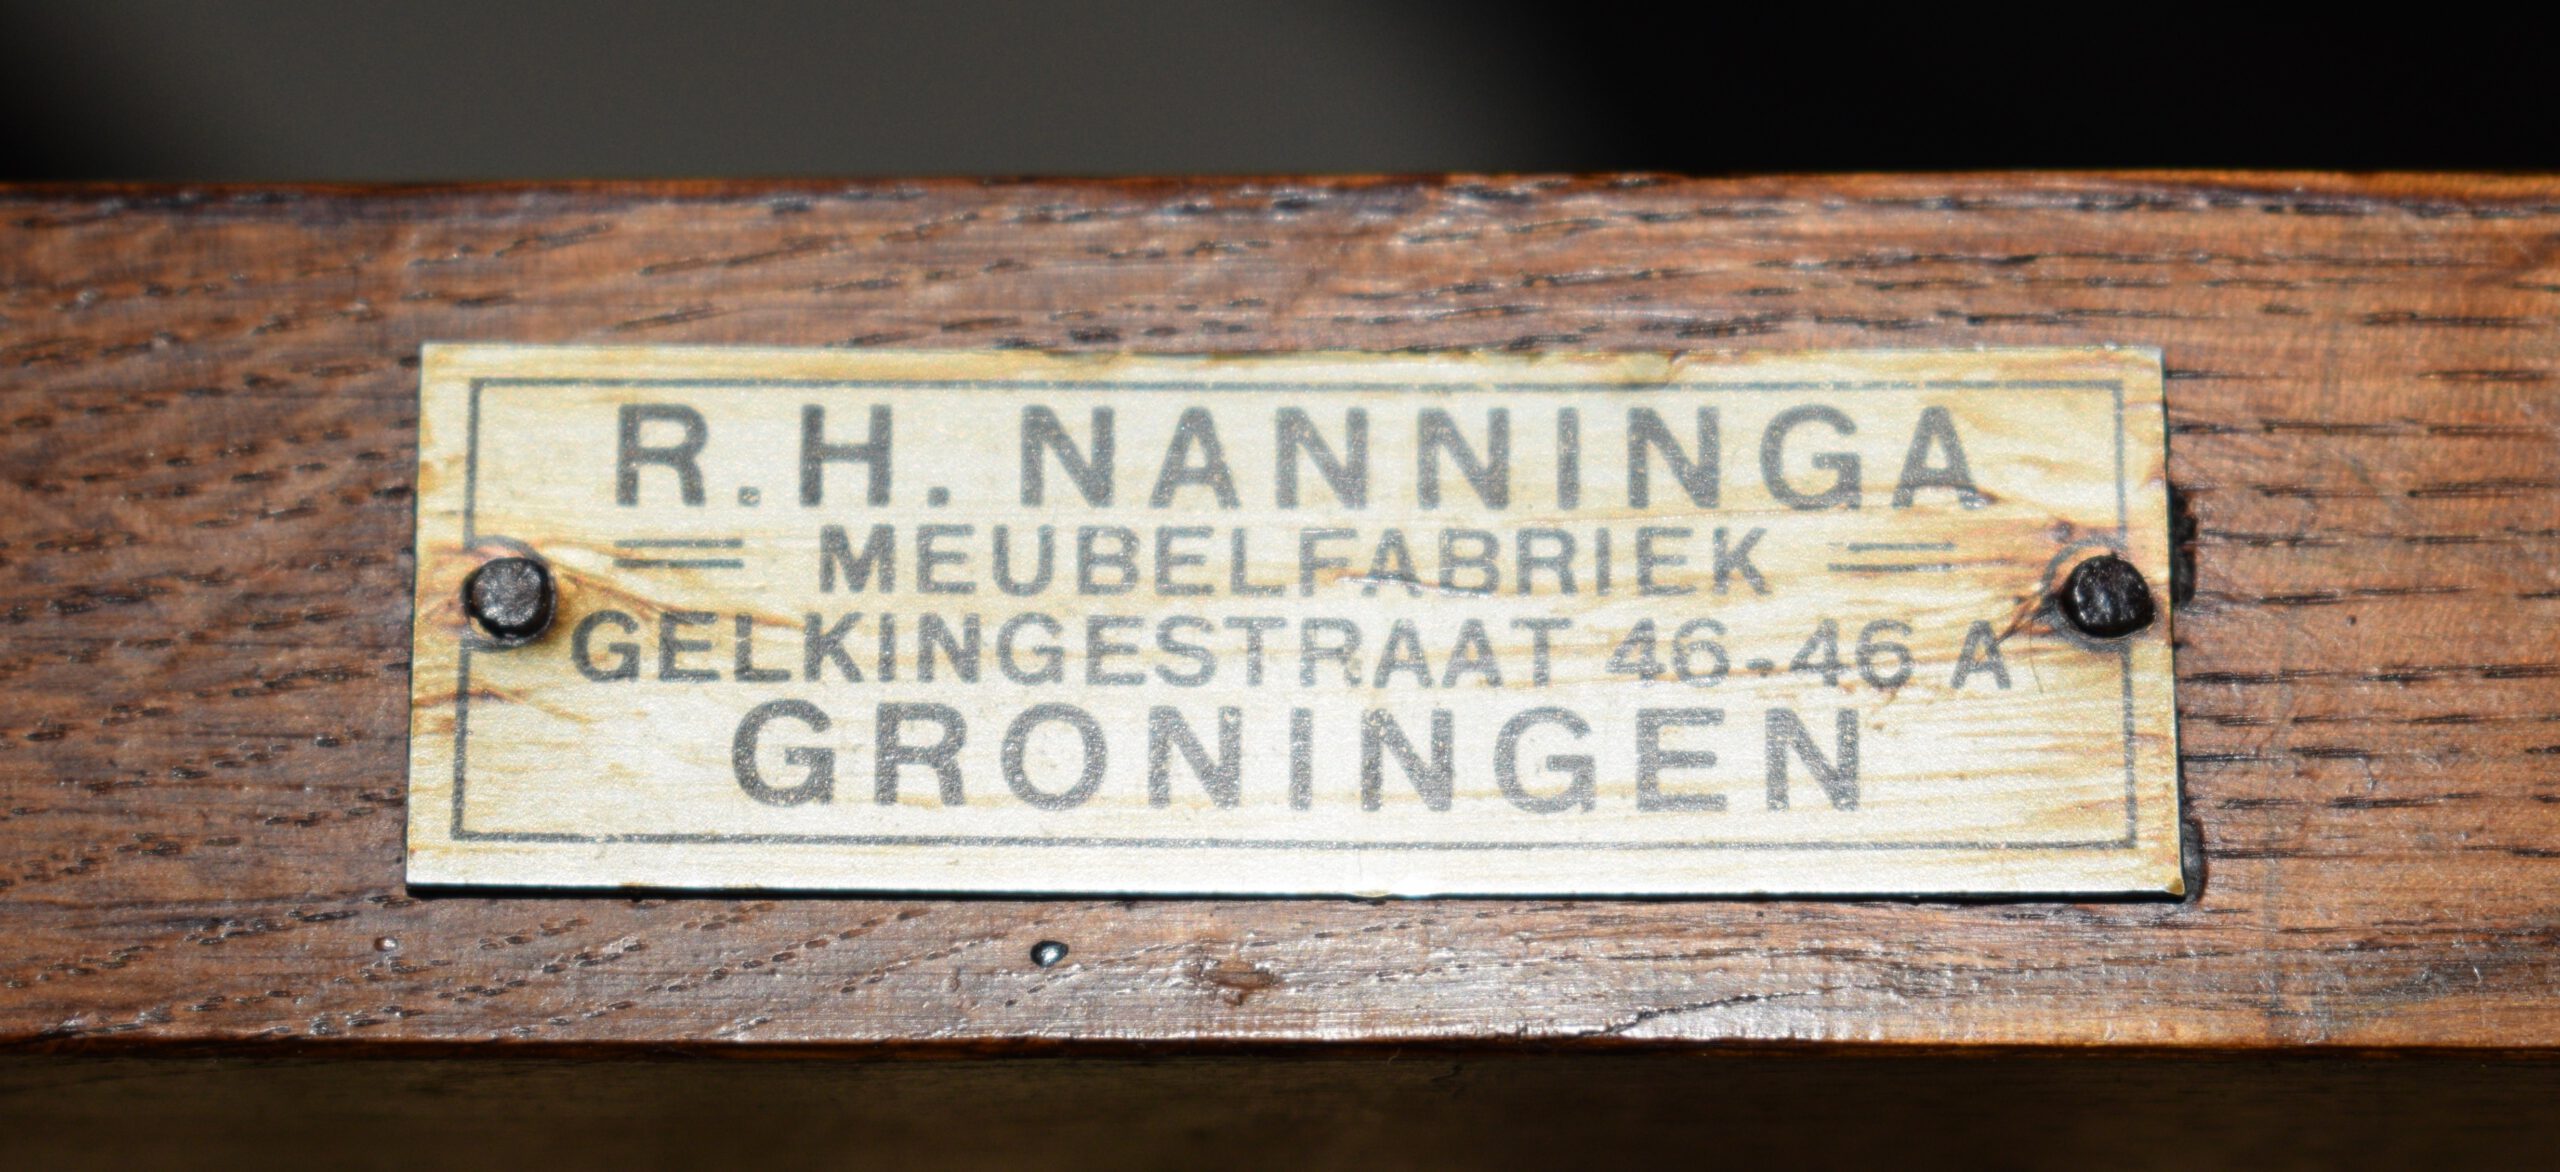 Antieke-eetkamerstoelen-eiken-Nanninga-Groningen-ca-1900-Antiekboerderij-Het-Wagenwiel-1